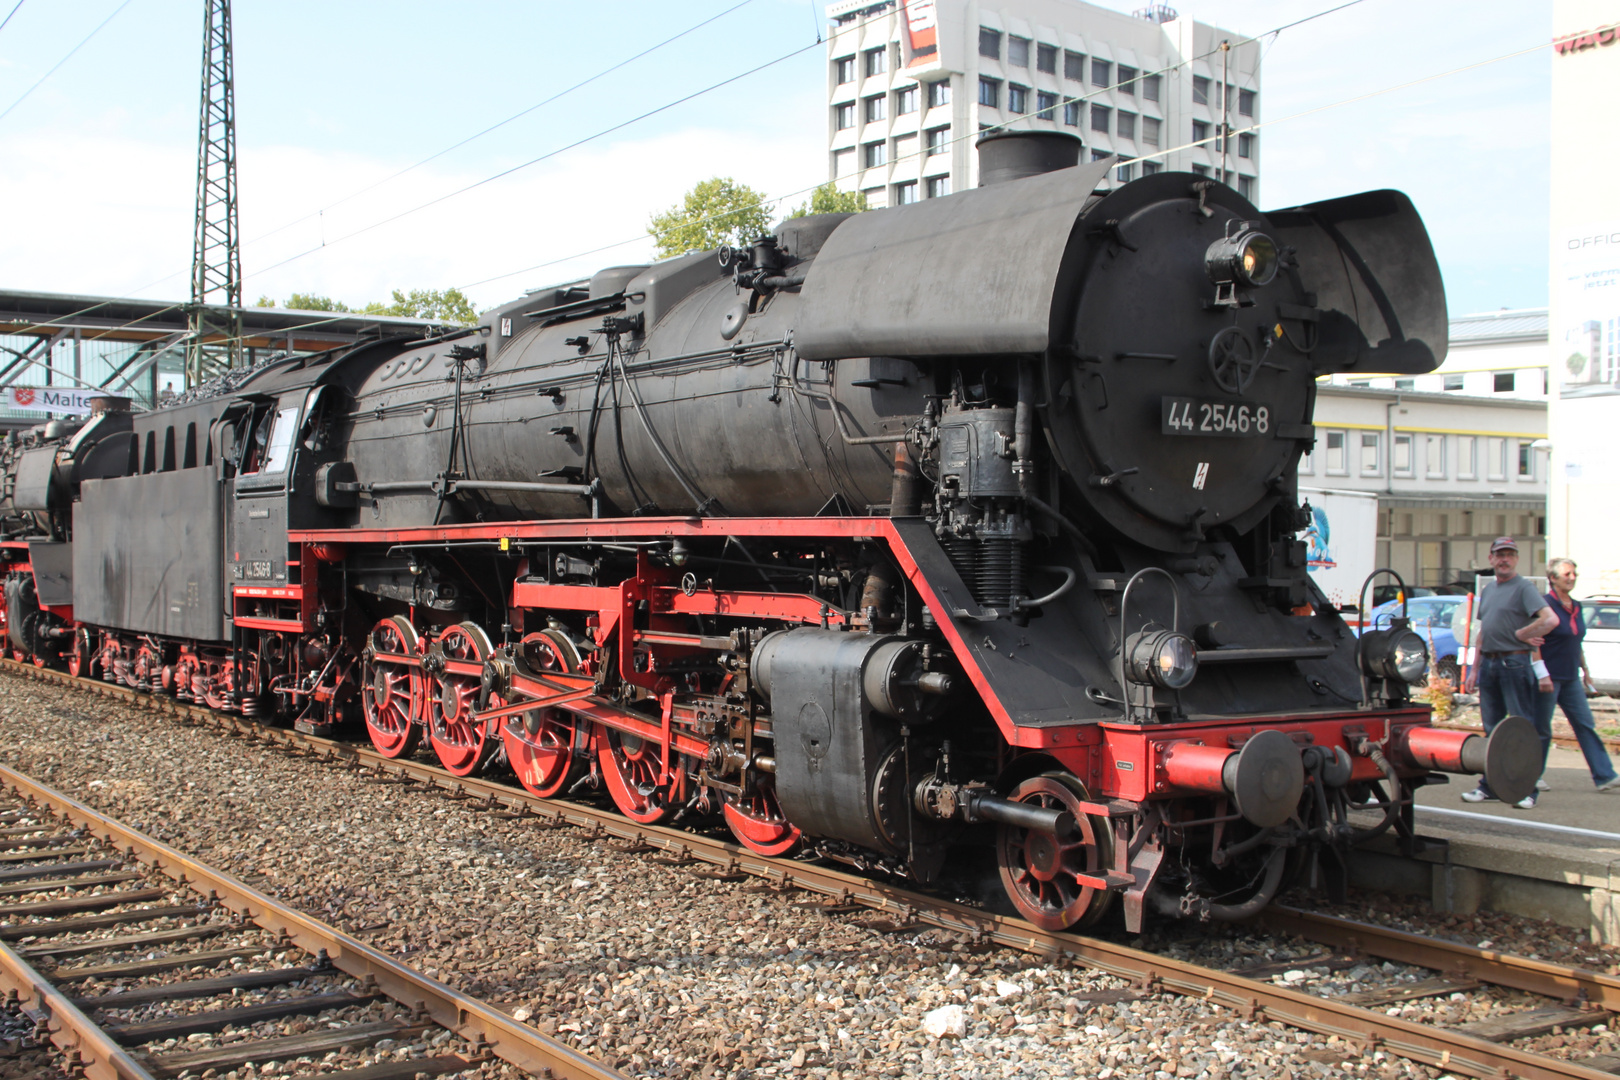 Dampflok 44 2546-8 vom Bayerischem Eisenbahnmuseum bei den 8. Märklintage 2011